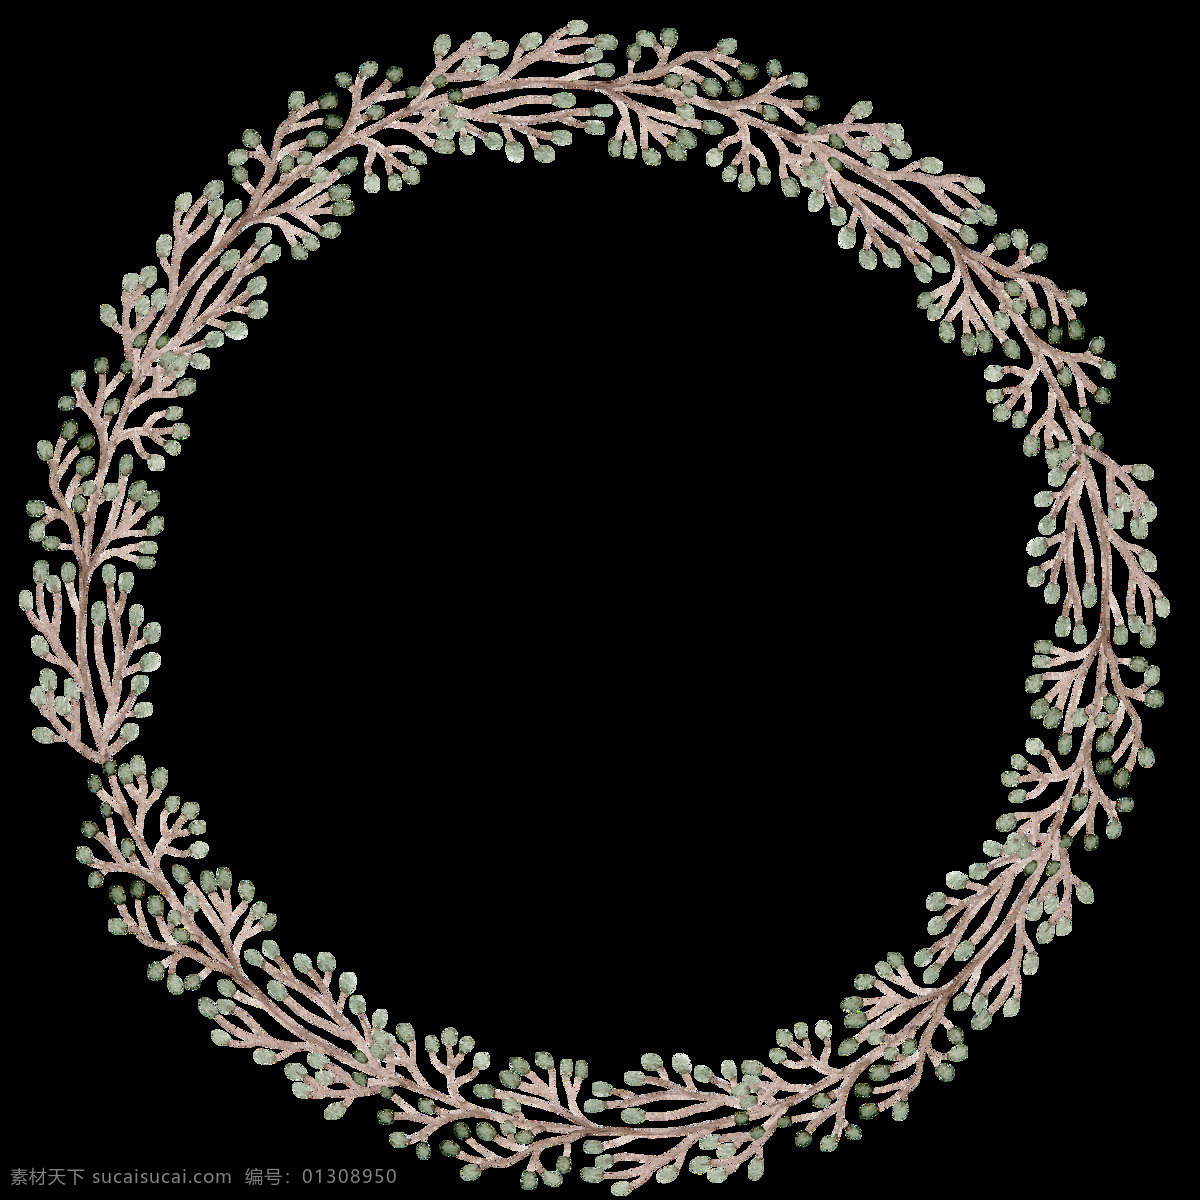 干枯 树枝 花环 透明 装饰 抠图专用 设计素材